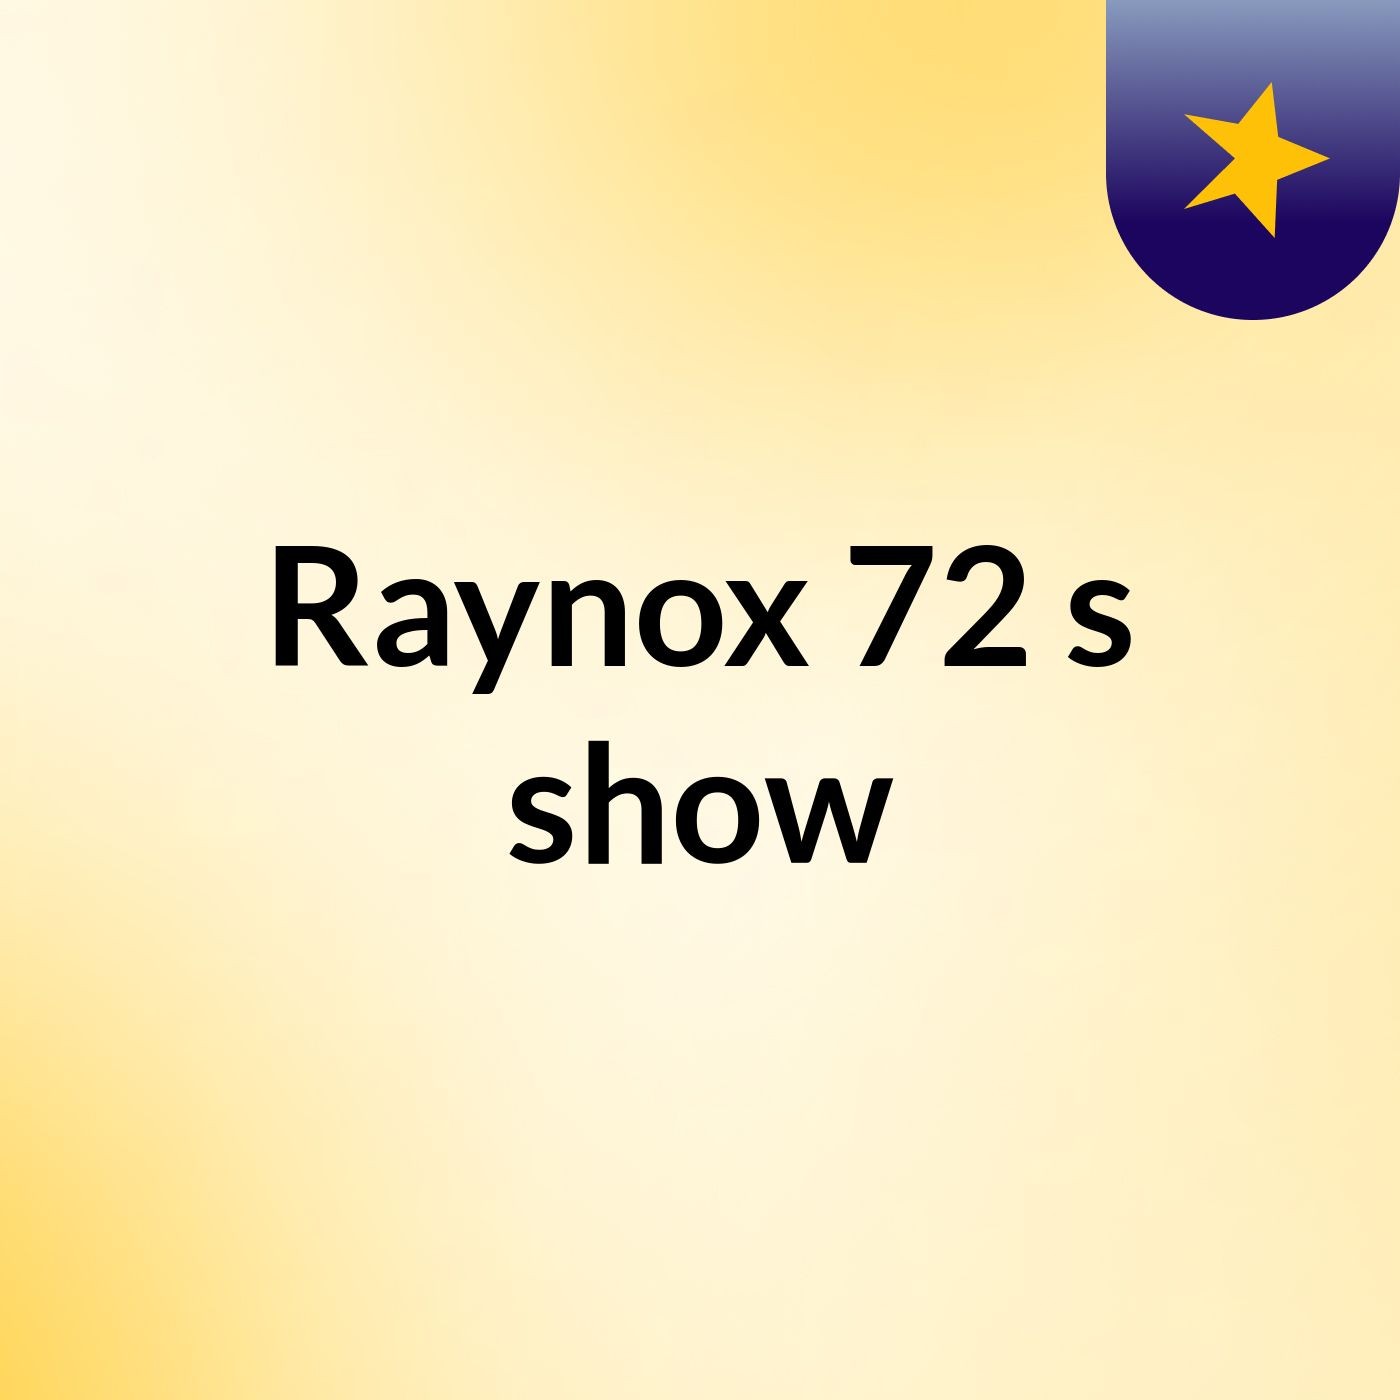 Raynox 72's show